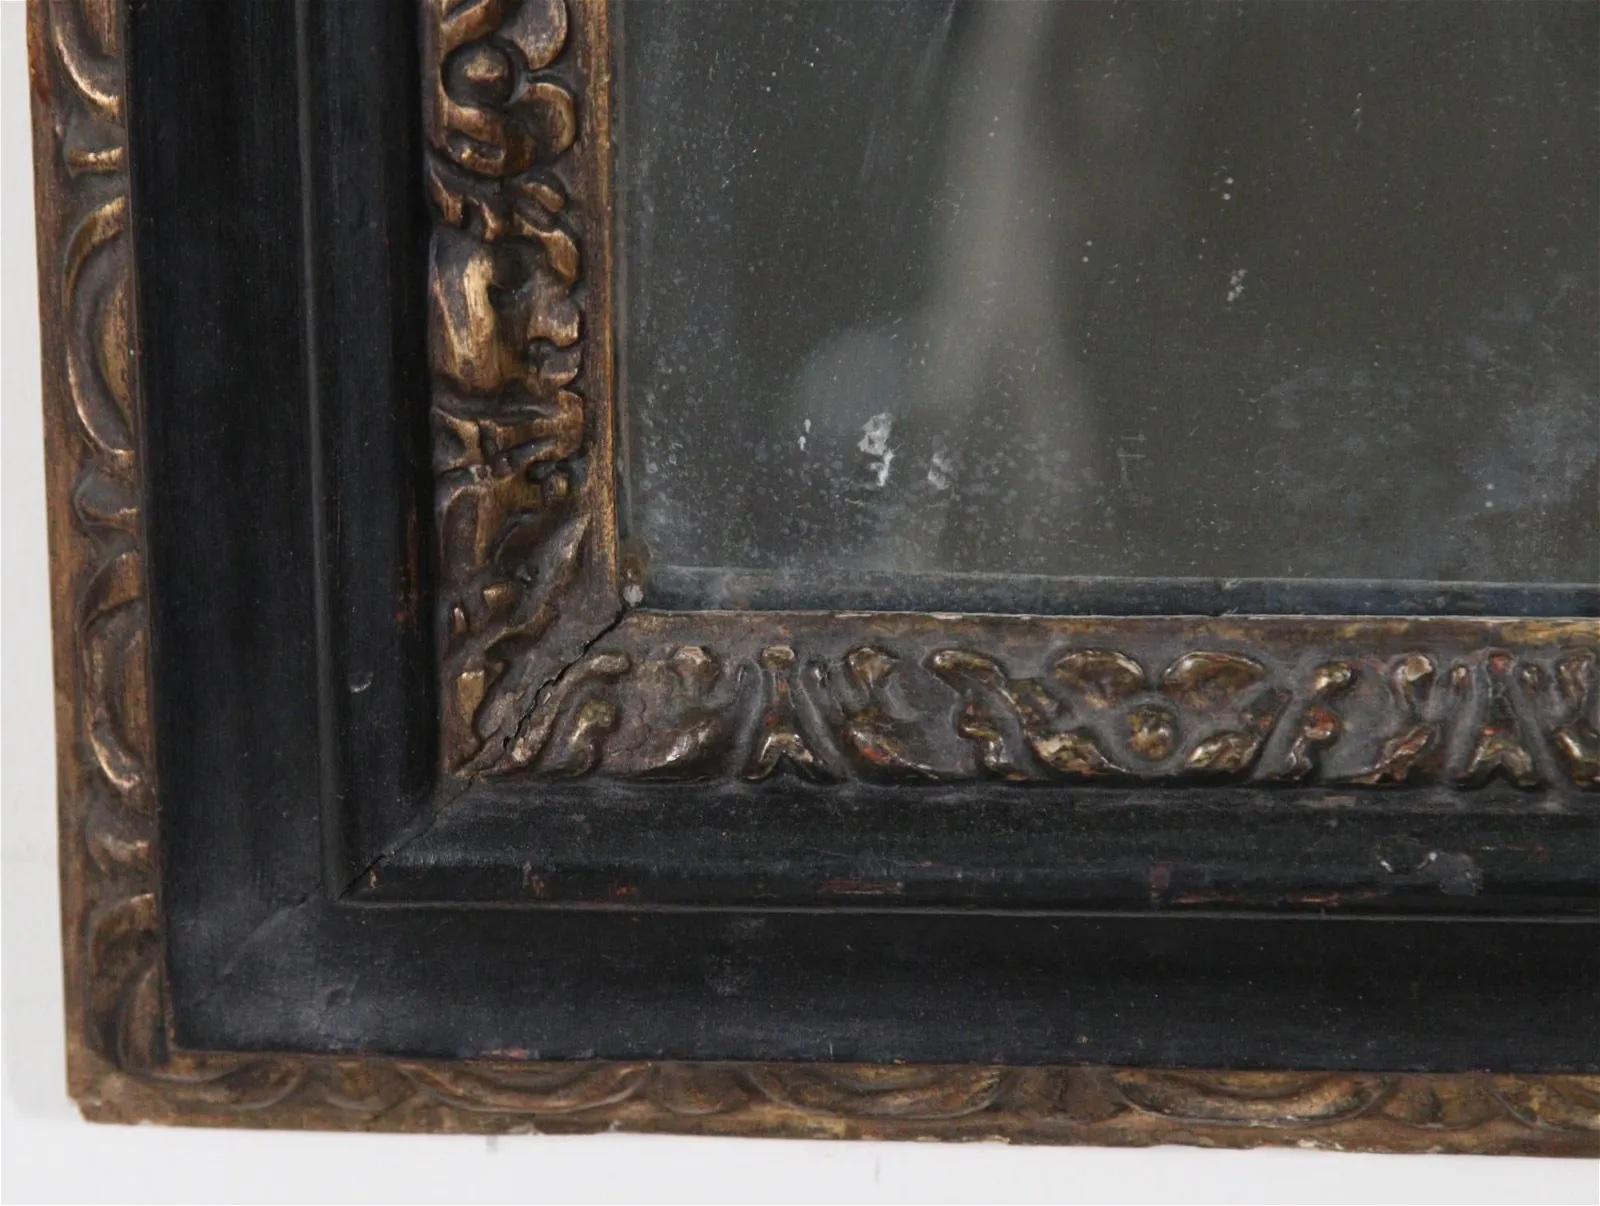 Barockspiegel aus dem 18. Jahrhundert mit schwarzem Rahmen. Der elegante Rahmen ist auf der Innenseite mit vergoldeten Akanthusblättern und auf der Außenseite mit vergoldeten Ei-und-Pfeil-Schnitzereien verziert. Es ist mit wunderschön geschnitzten